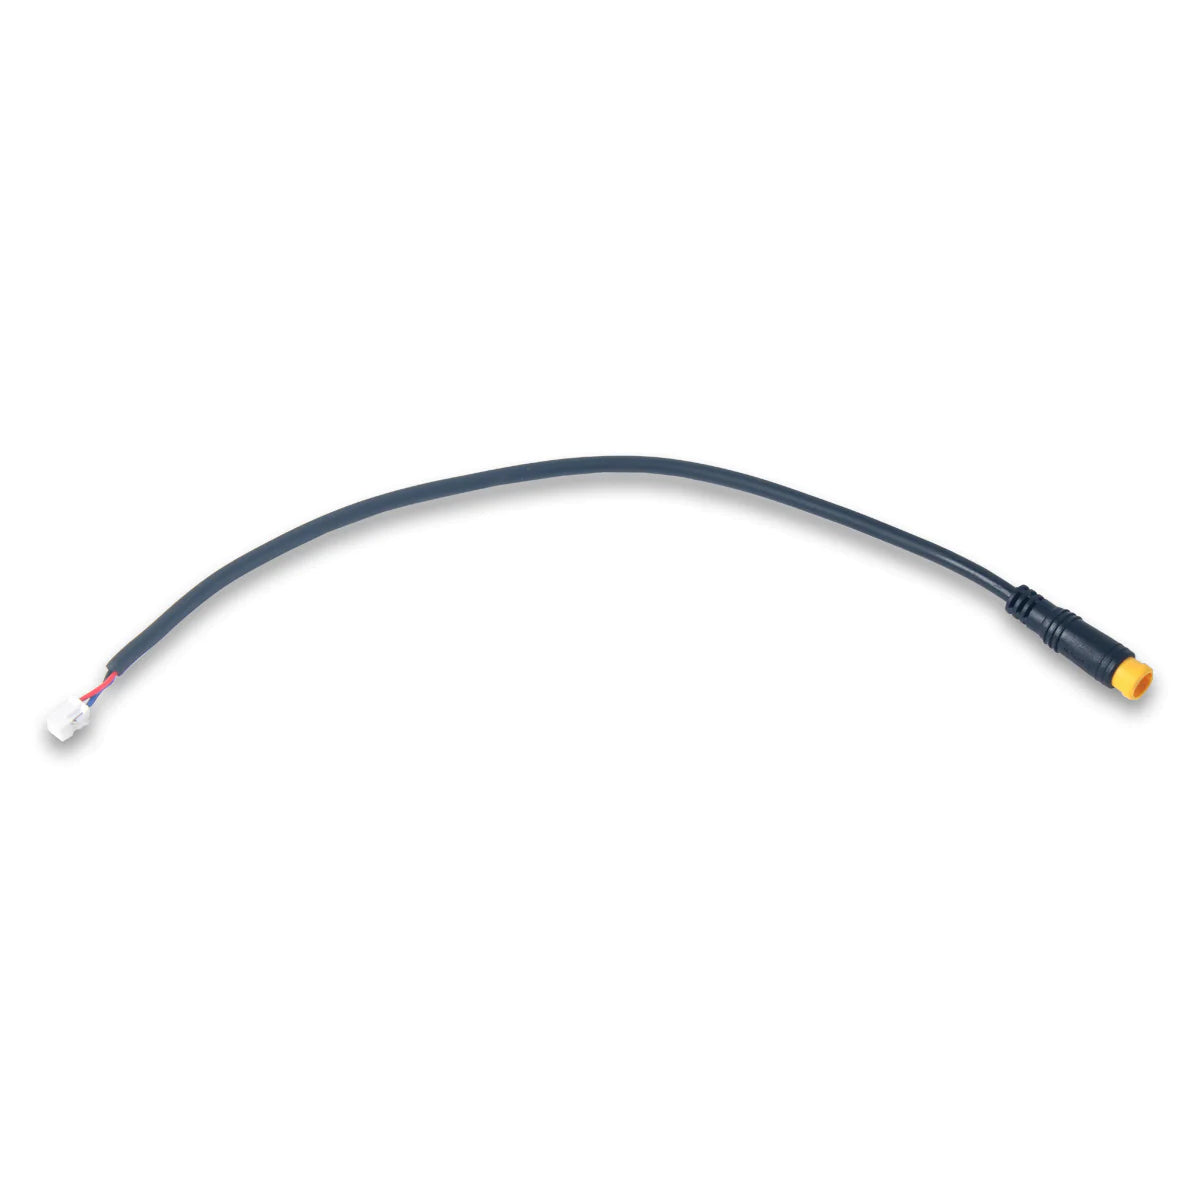 Nucular - Bafang / Higo Connector to Nucular Connector Cable SurRonshop